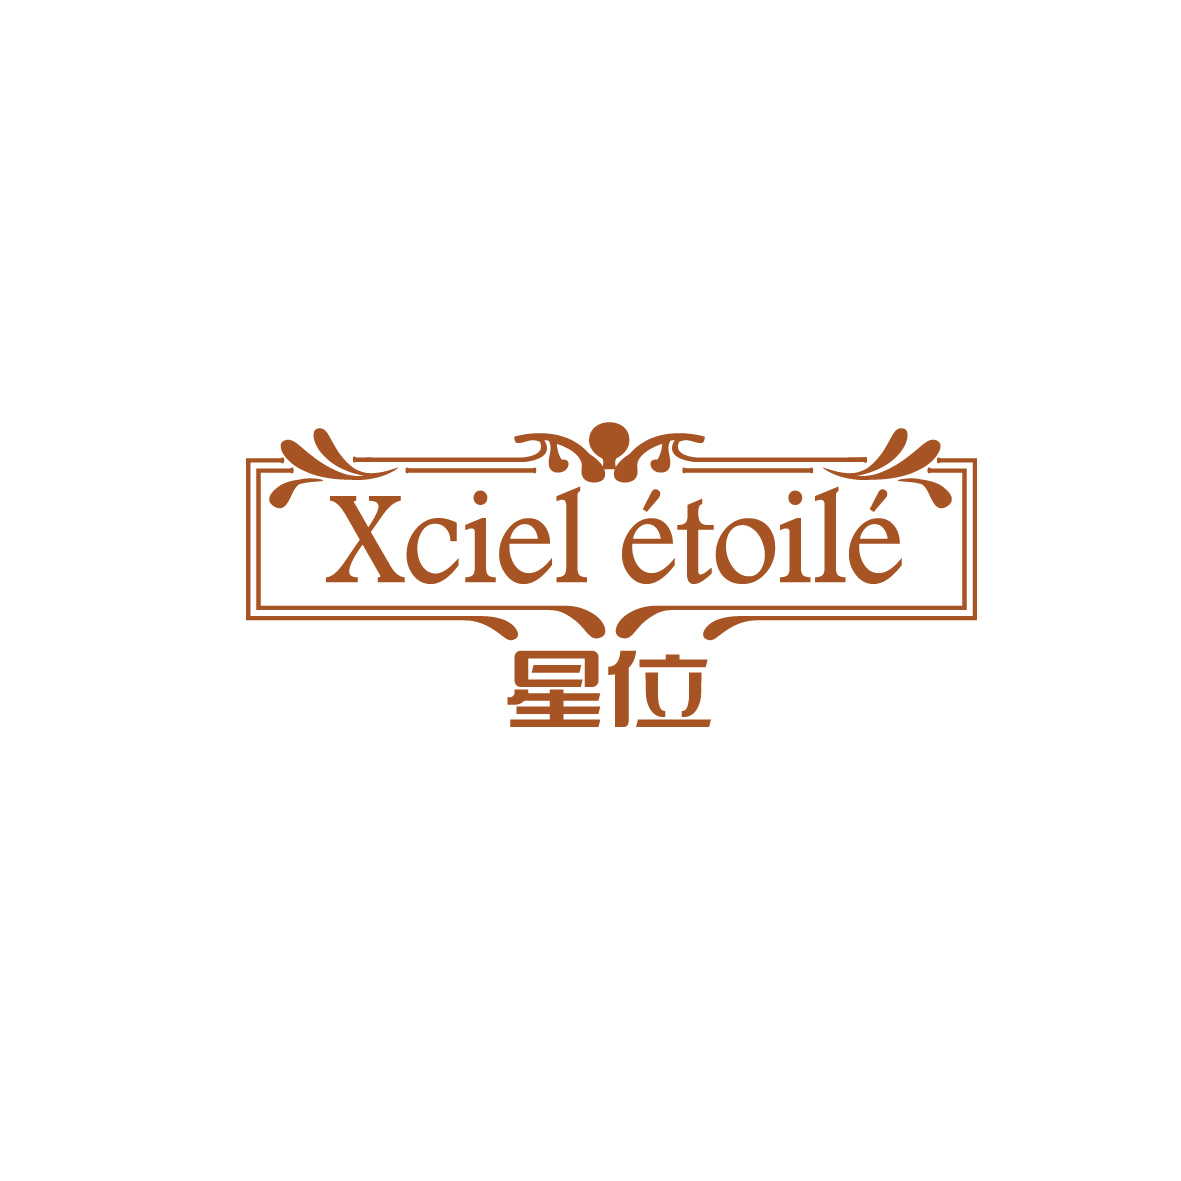 周晓丹商标星位 XCIEL ETOILE（20类）多少钱？